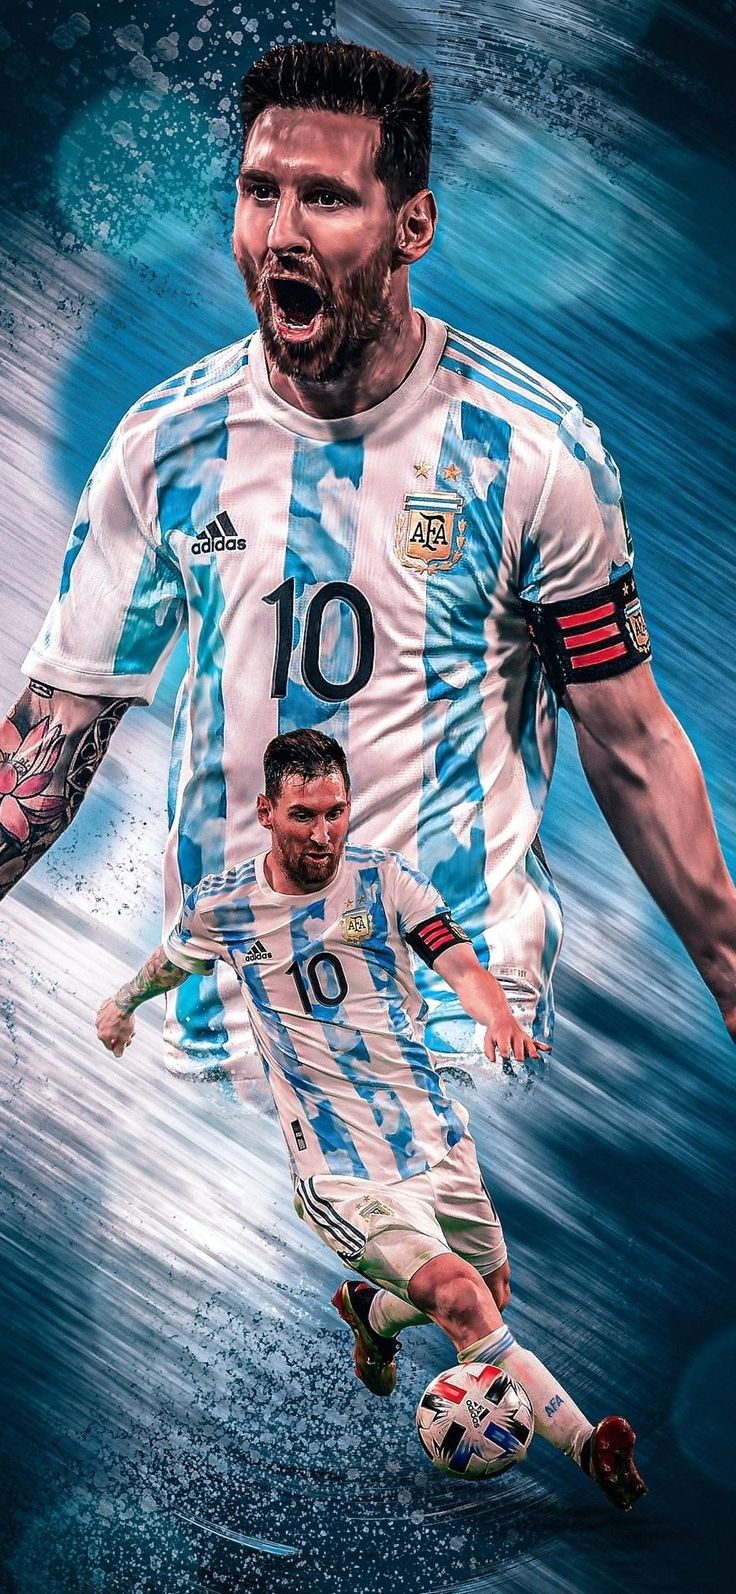 Đón chào Argentina World Cup 2022 cùng Messi 2022 Argentina Wallpapers. Bộ sưu tập hình nền này sẽ giúp bạn thể hiện lòng hâm mộ với siêu sao bóng đá và đội tuyển nước nhà.